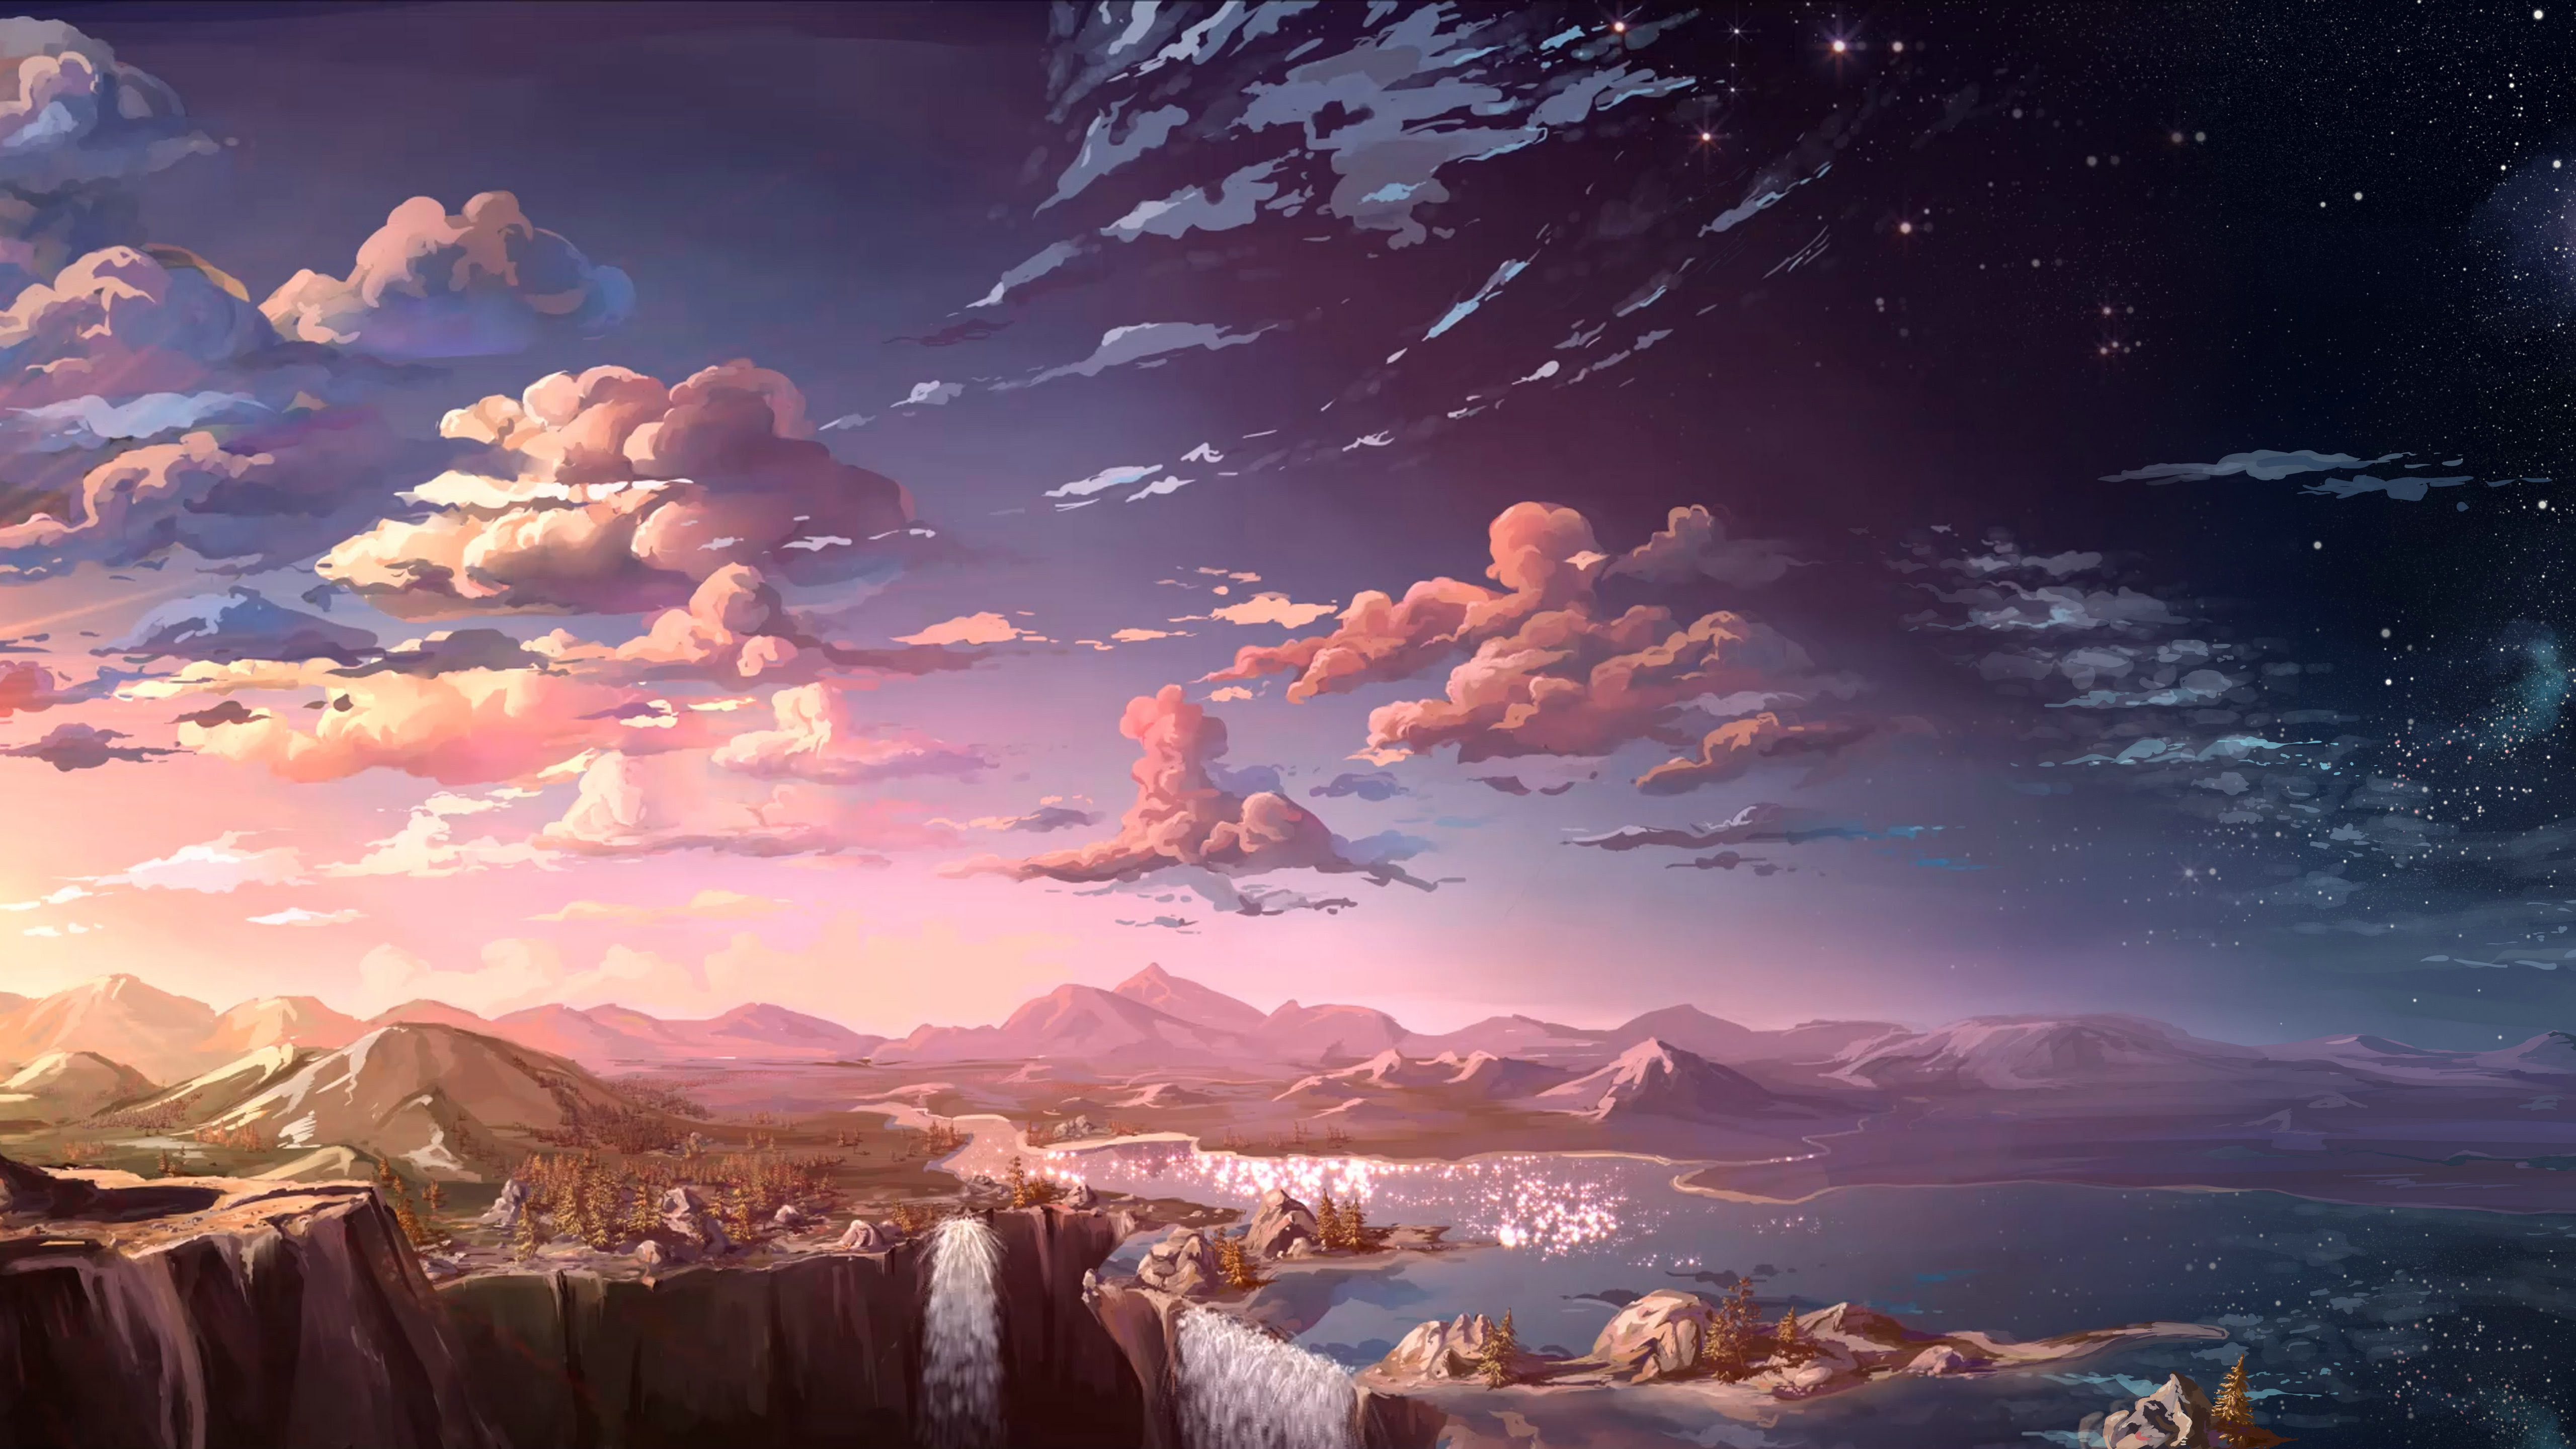 Anime Landscape Waterfall Cloud 5k, HD Anime, 4k ...